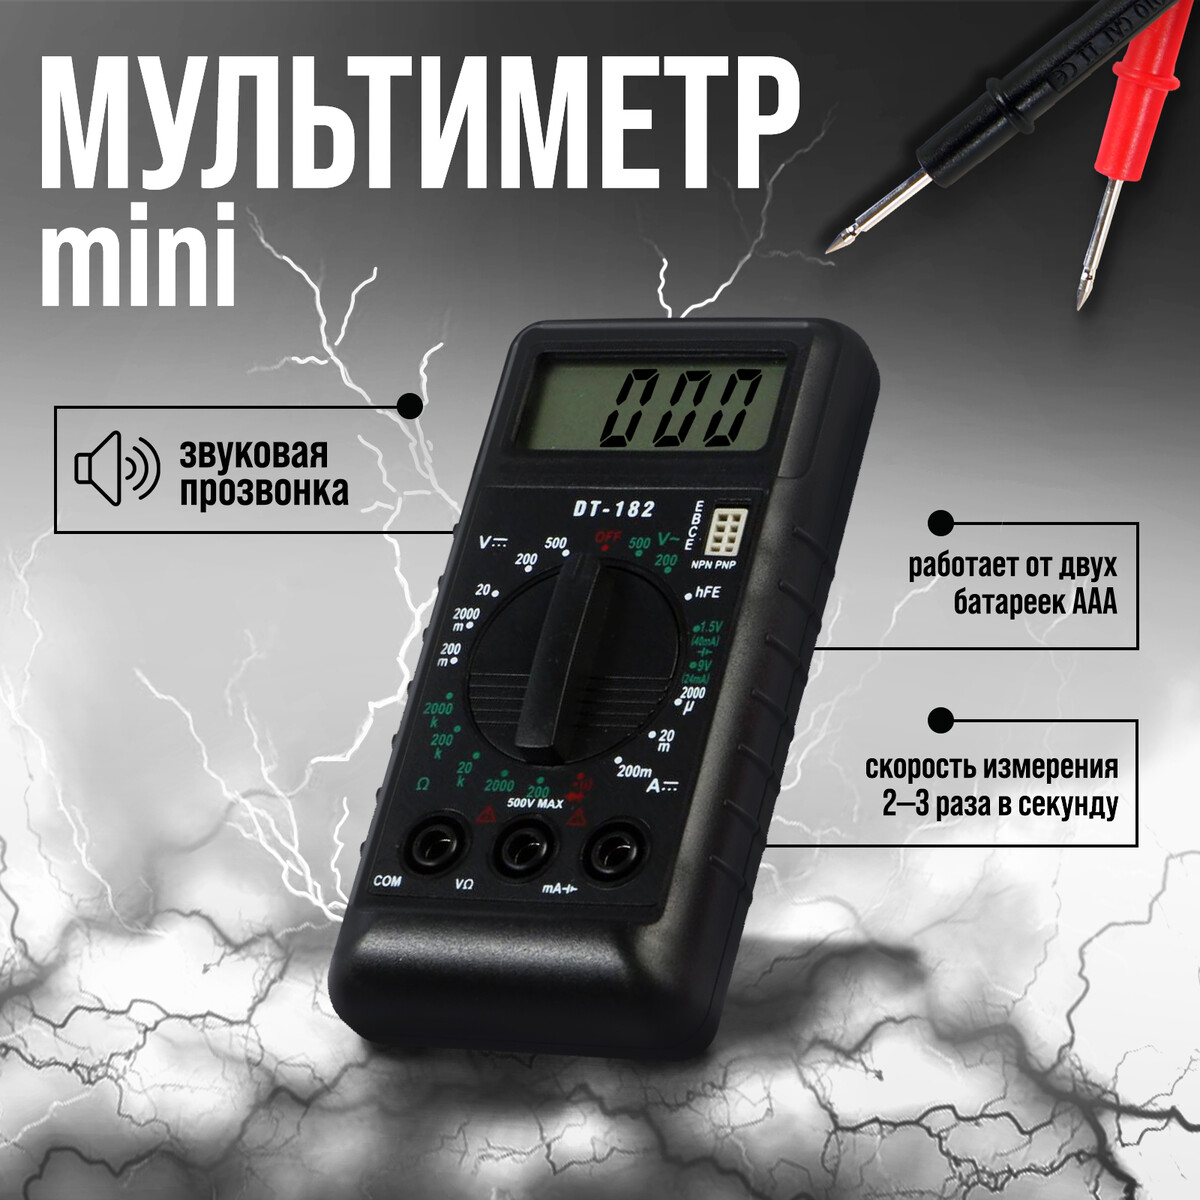 Мультиметр тундра mini, dt-182, acv/dcv, dca, 200-200mω, проверка батареек 1.5 и 9v